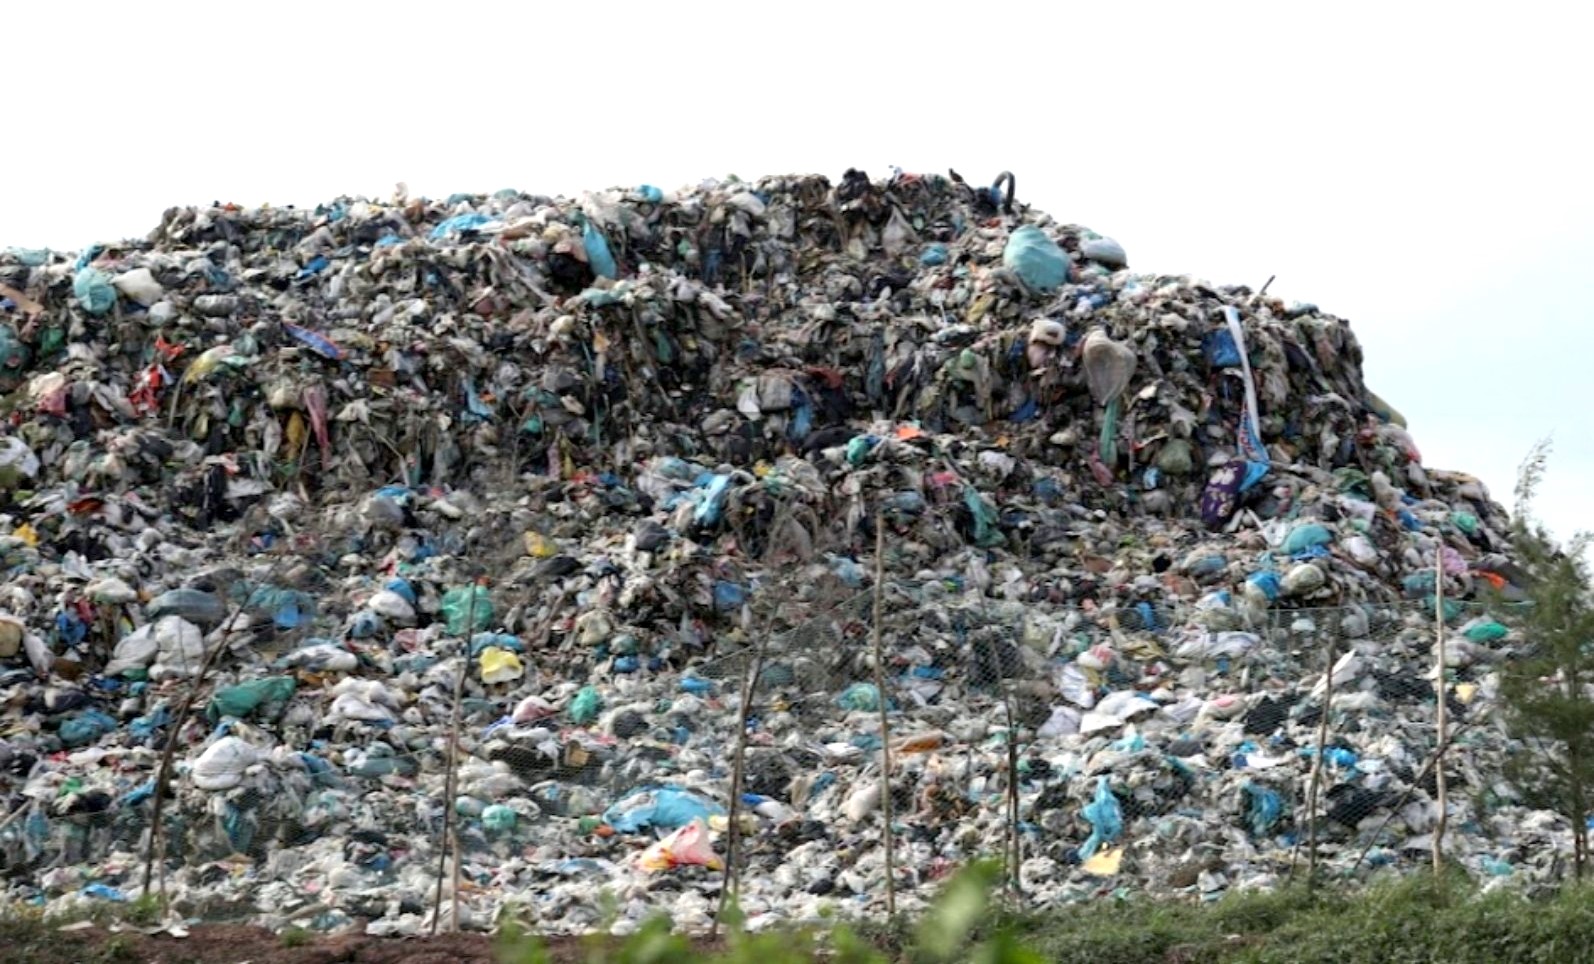 Do chưa có Nhà máy xử lý rác nên bãi rác tập trung của tỉnh Bạc Liêu nằm ở xã Thị trấn Châu Hưng, huyện Vĩnh Lợi ngày càng nhiều rác gây ô nhiễm môi trường  xung quanh. Ảnh: Nhật Hồ